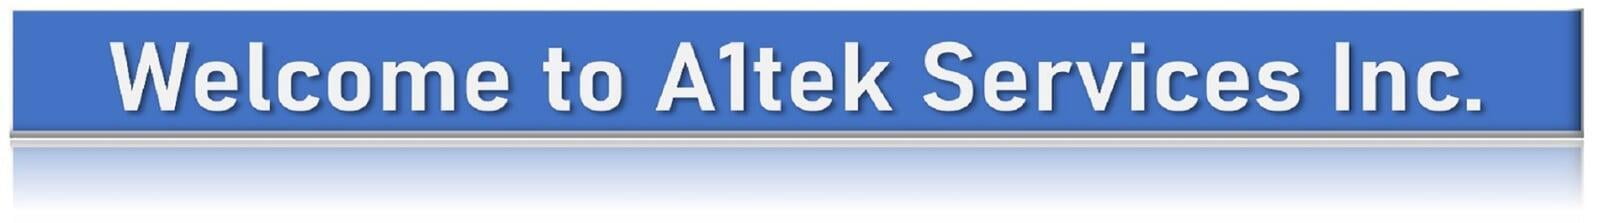 a1tek services inc